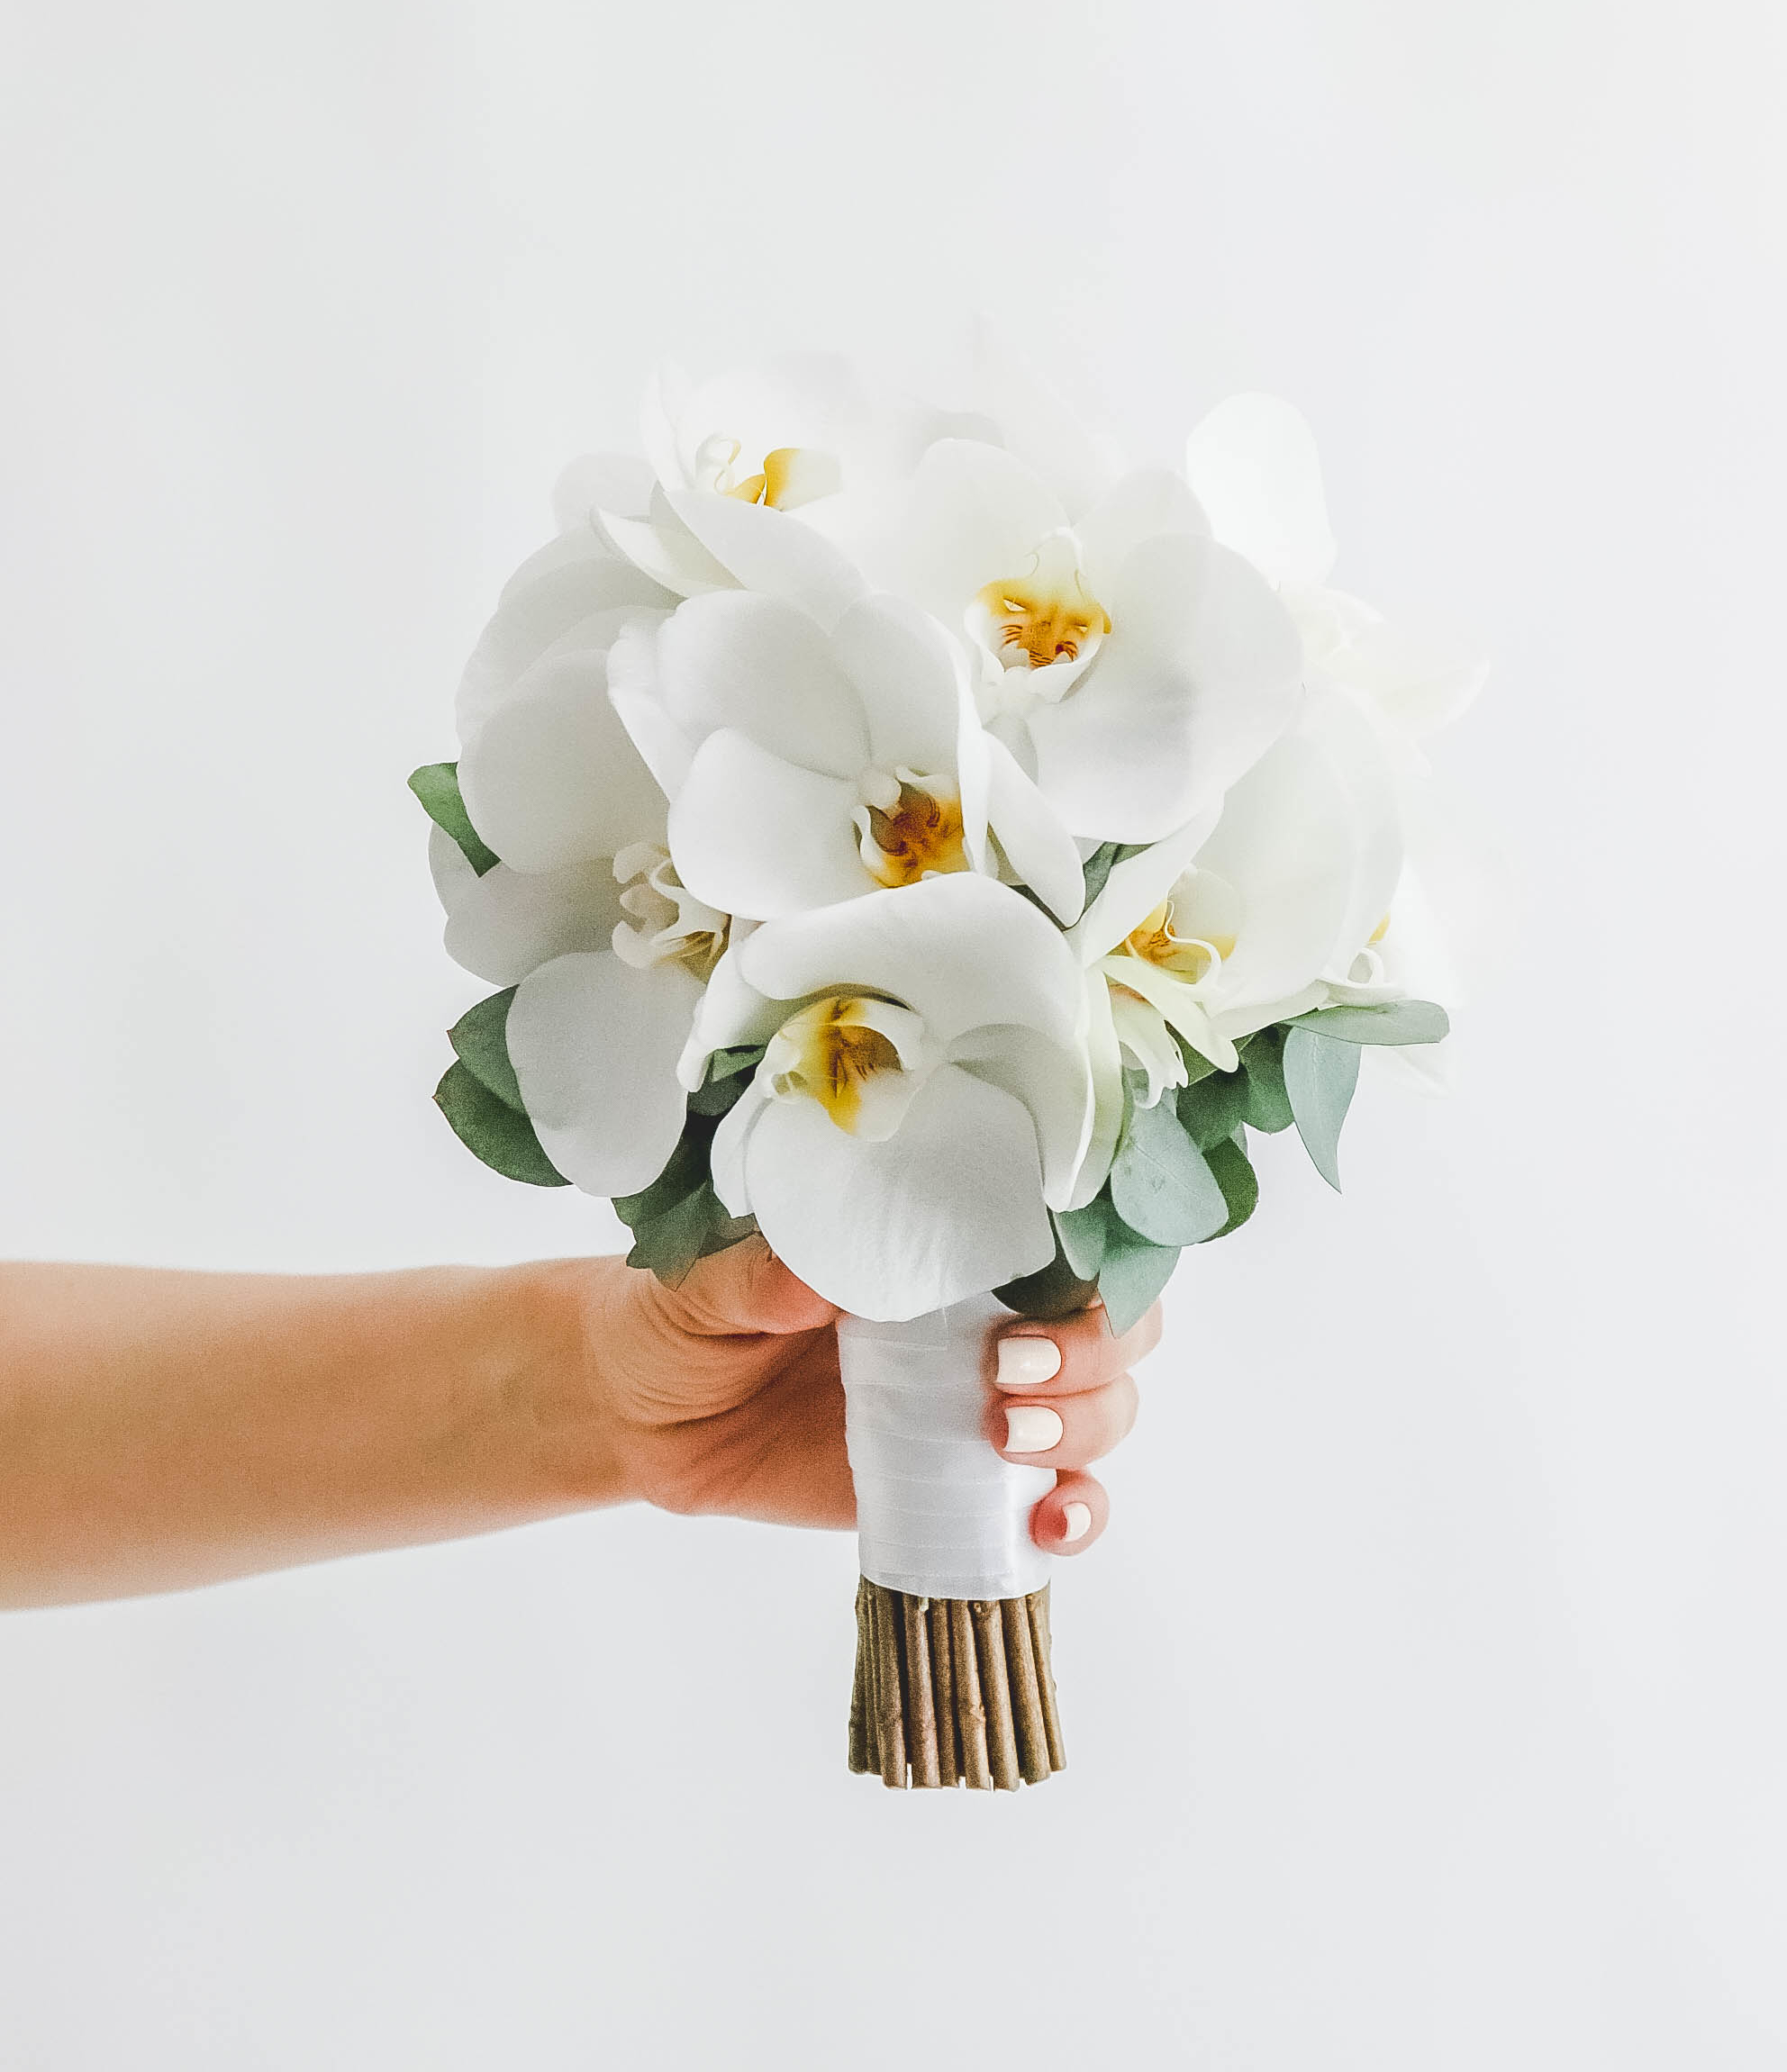 С какими цветами белые орхидеи объединяют в букетах?